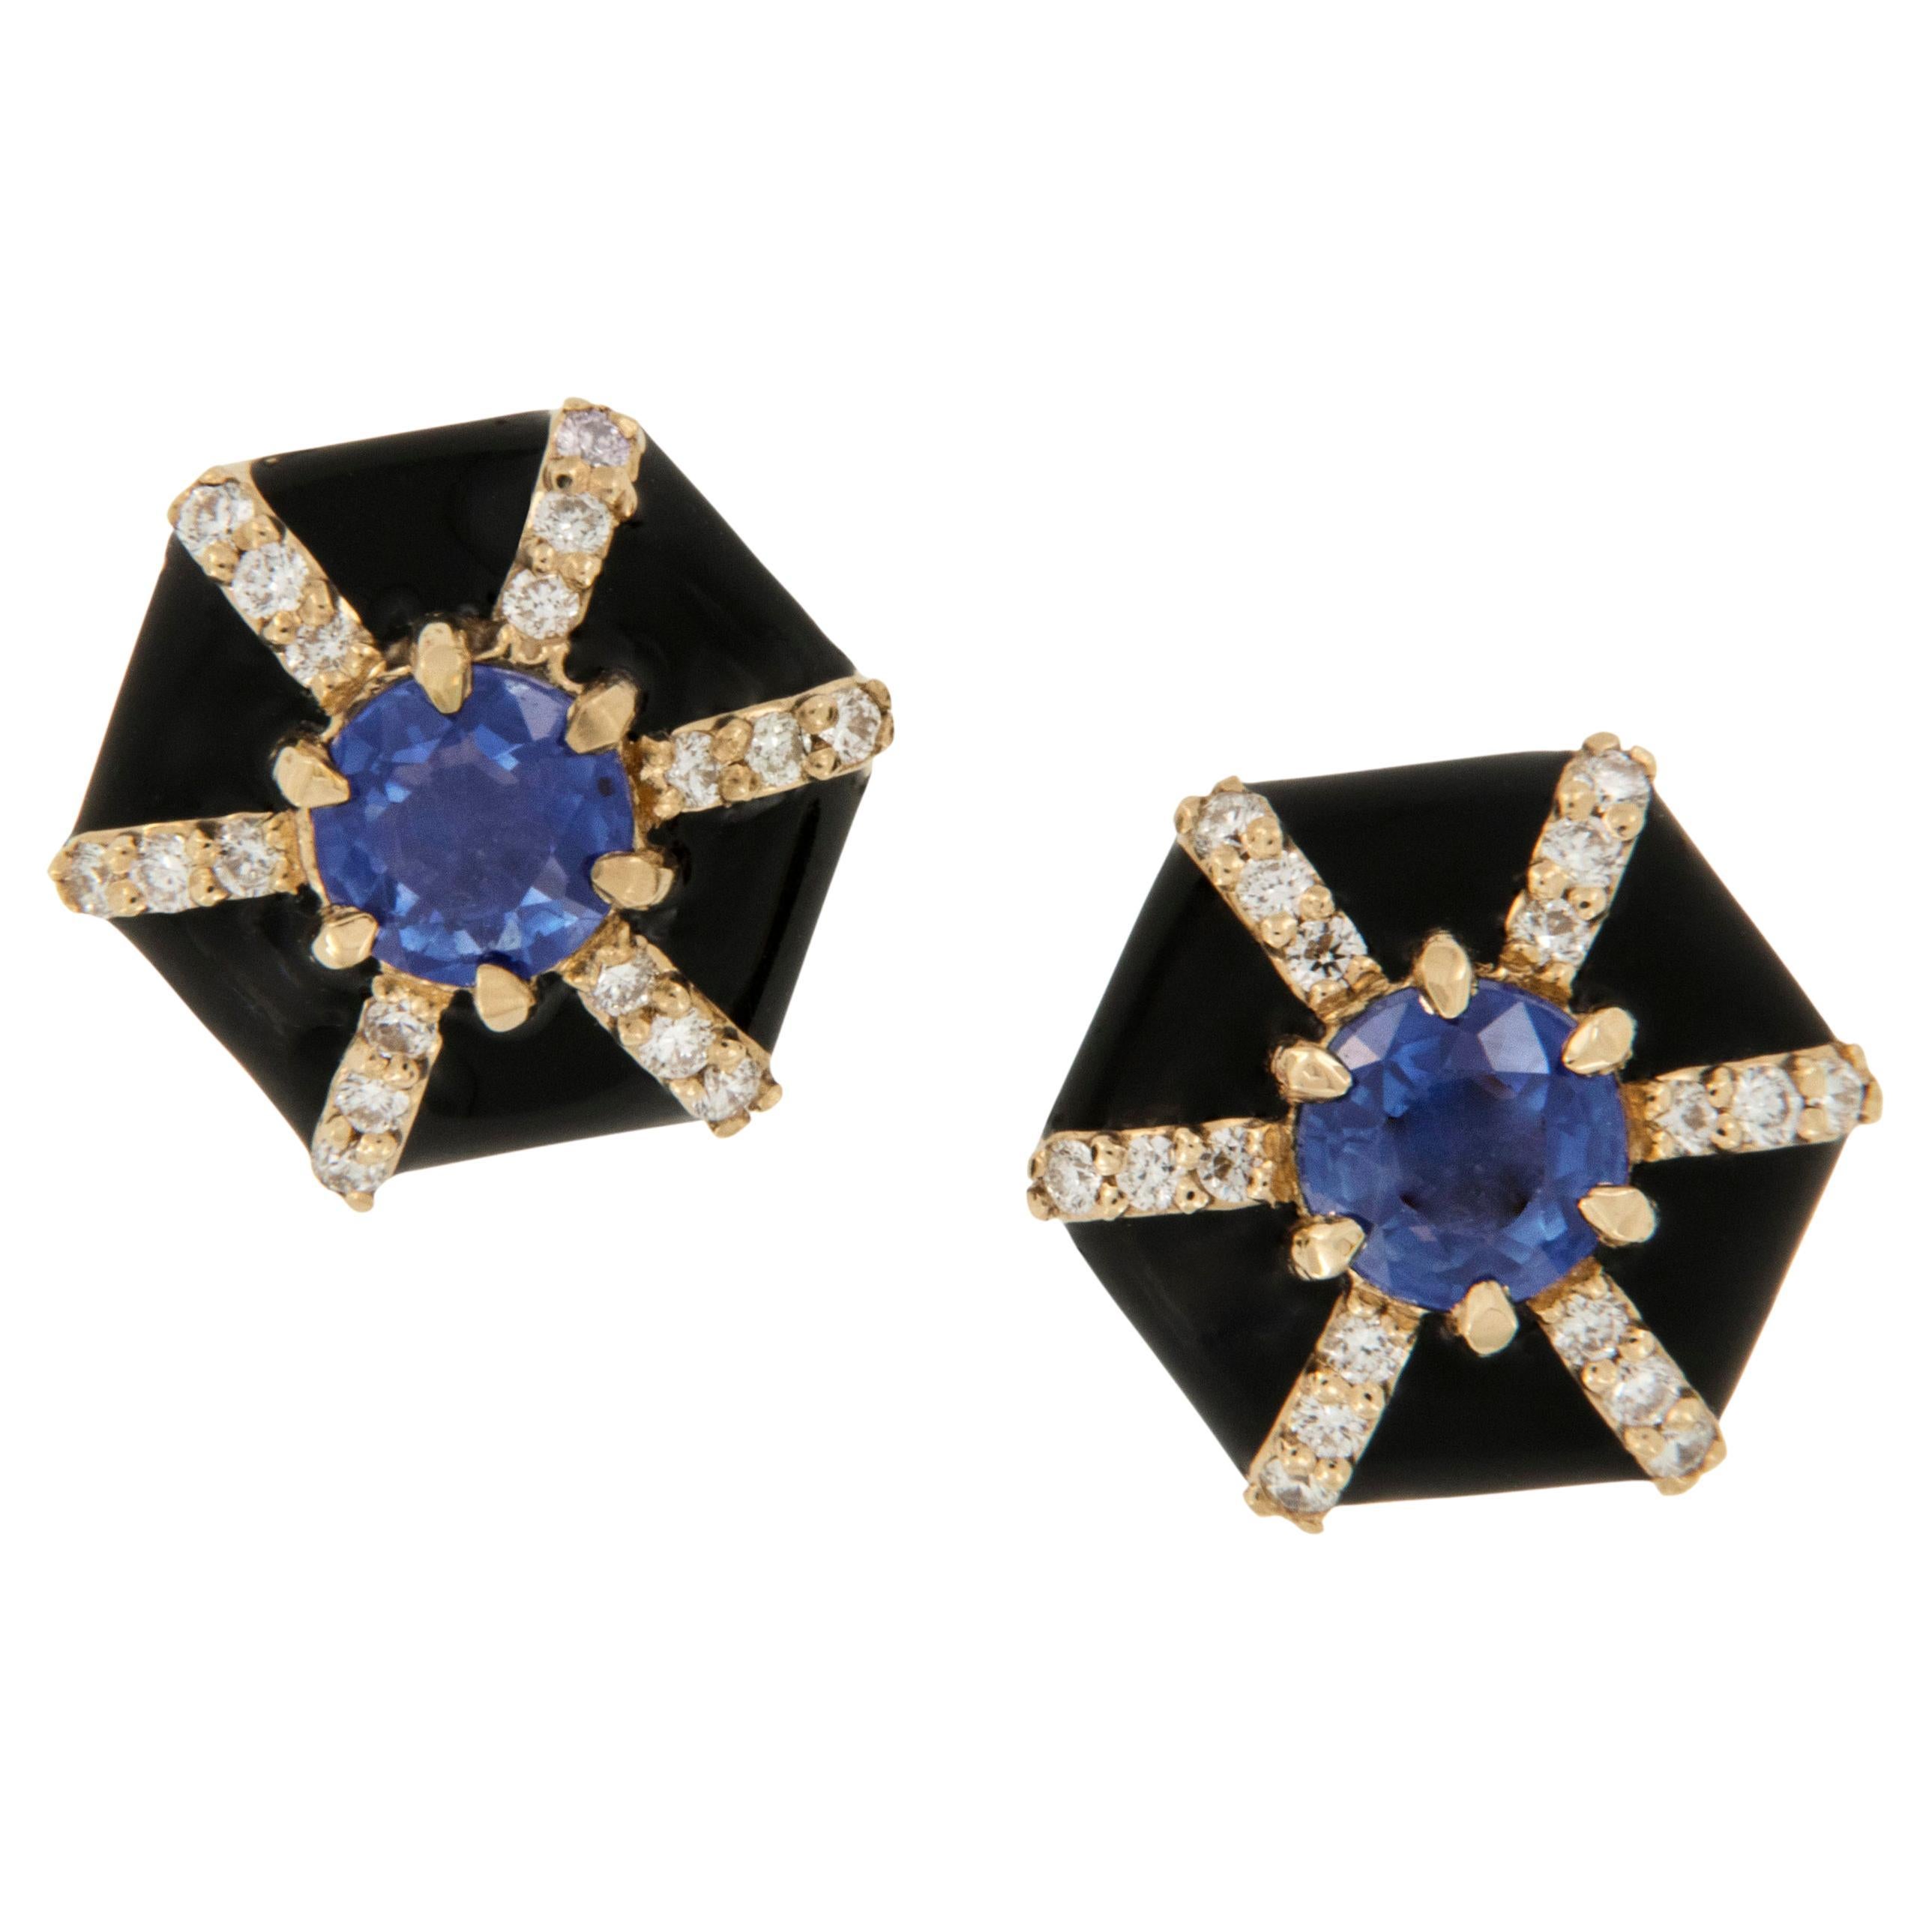 18 Karat Yellow Gold Sapphire Diamond Enamel Queen Earrings by Goshwara